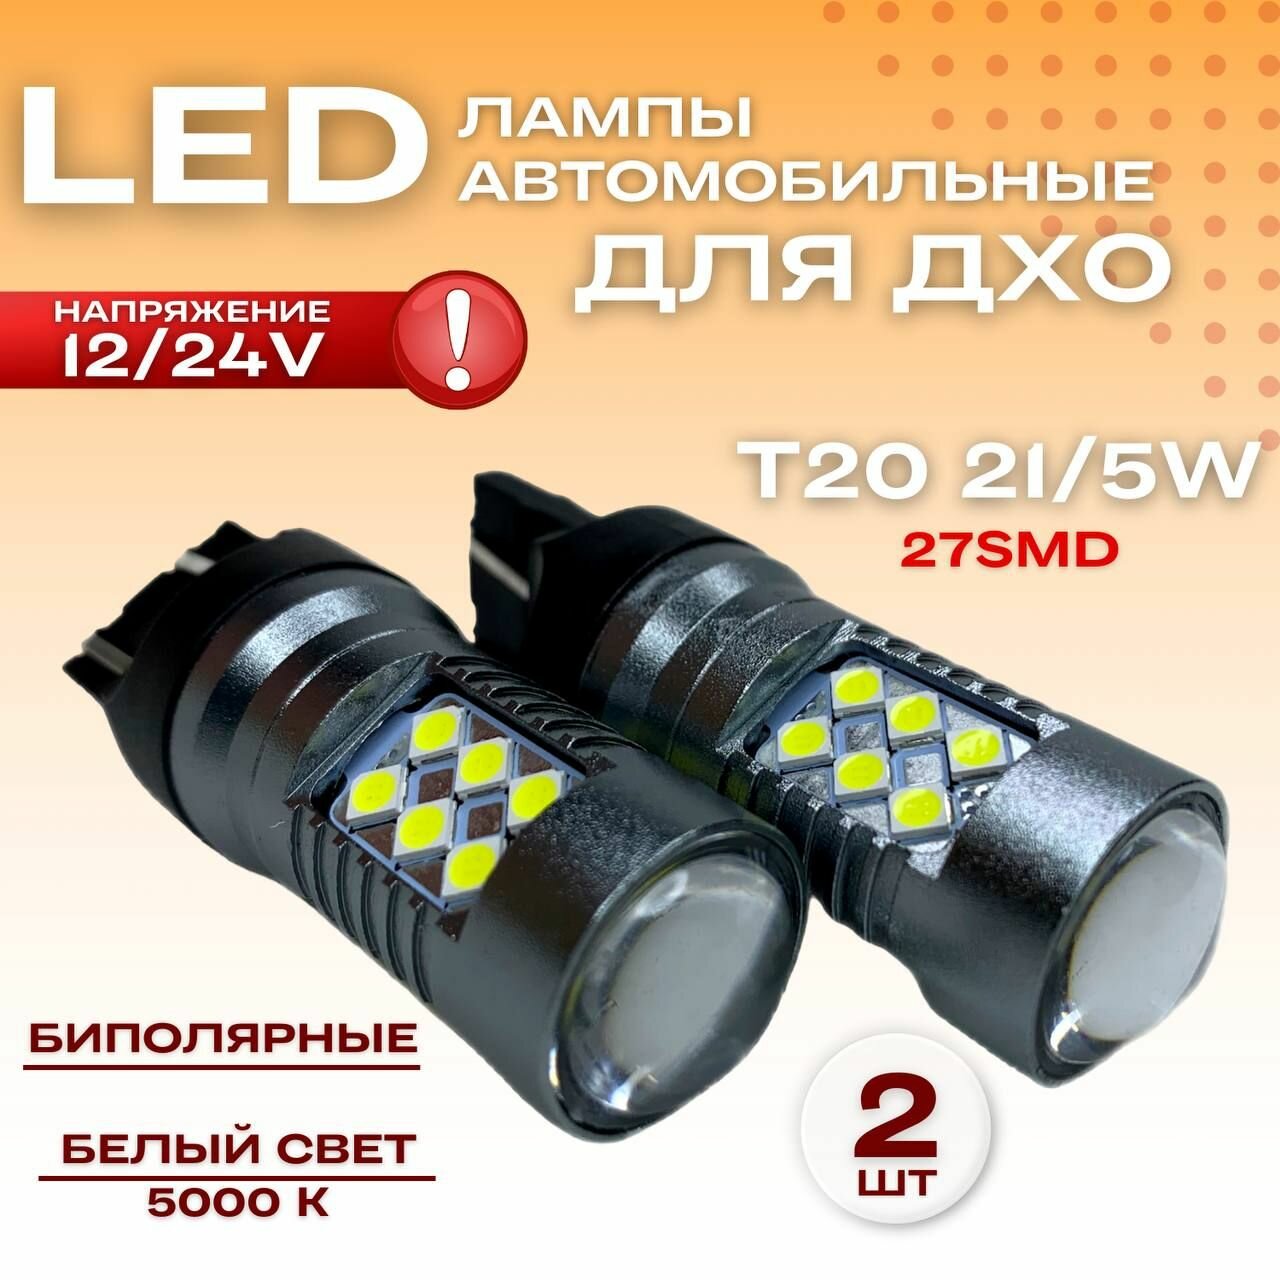 Лампы светодиодные габаритные автомобильные, Led (лед) дхо, биполярныеT20 12/24V 21/5W 24SMD , комплект 2шт